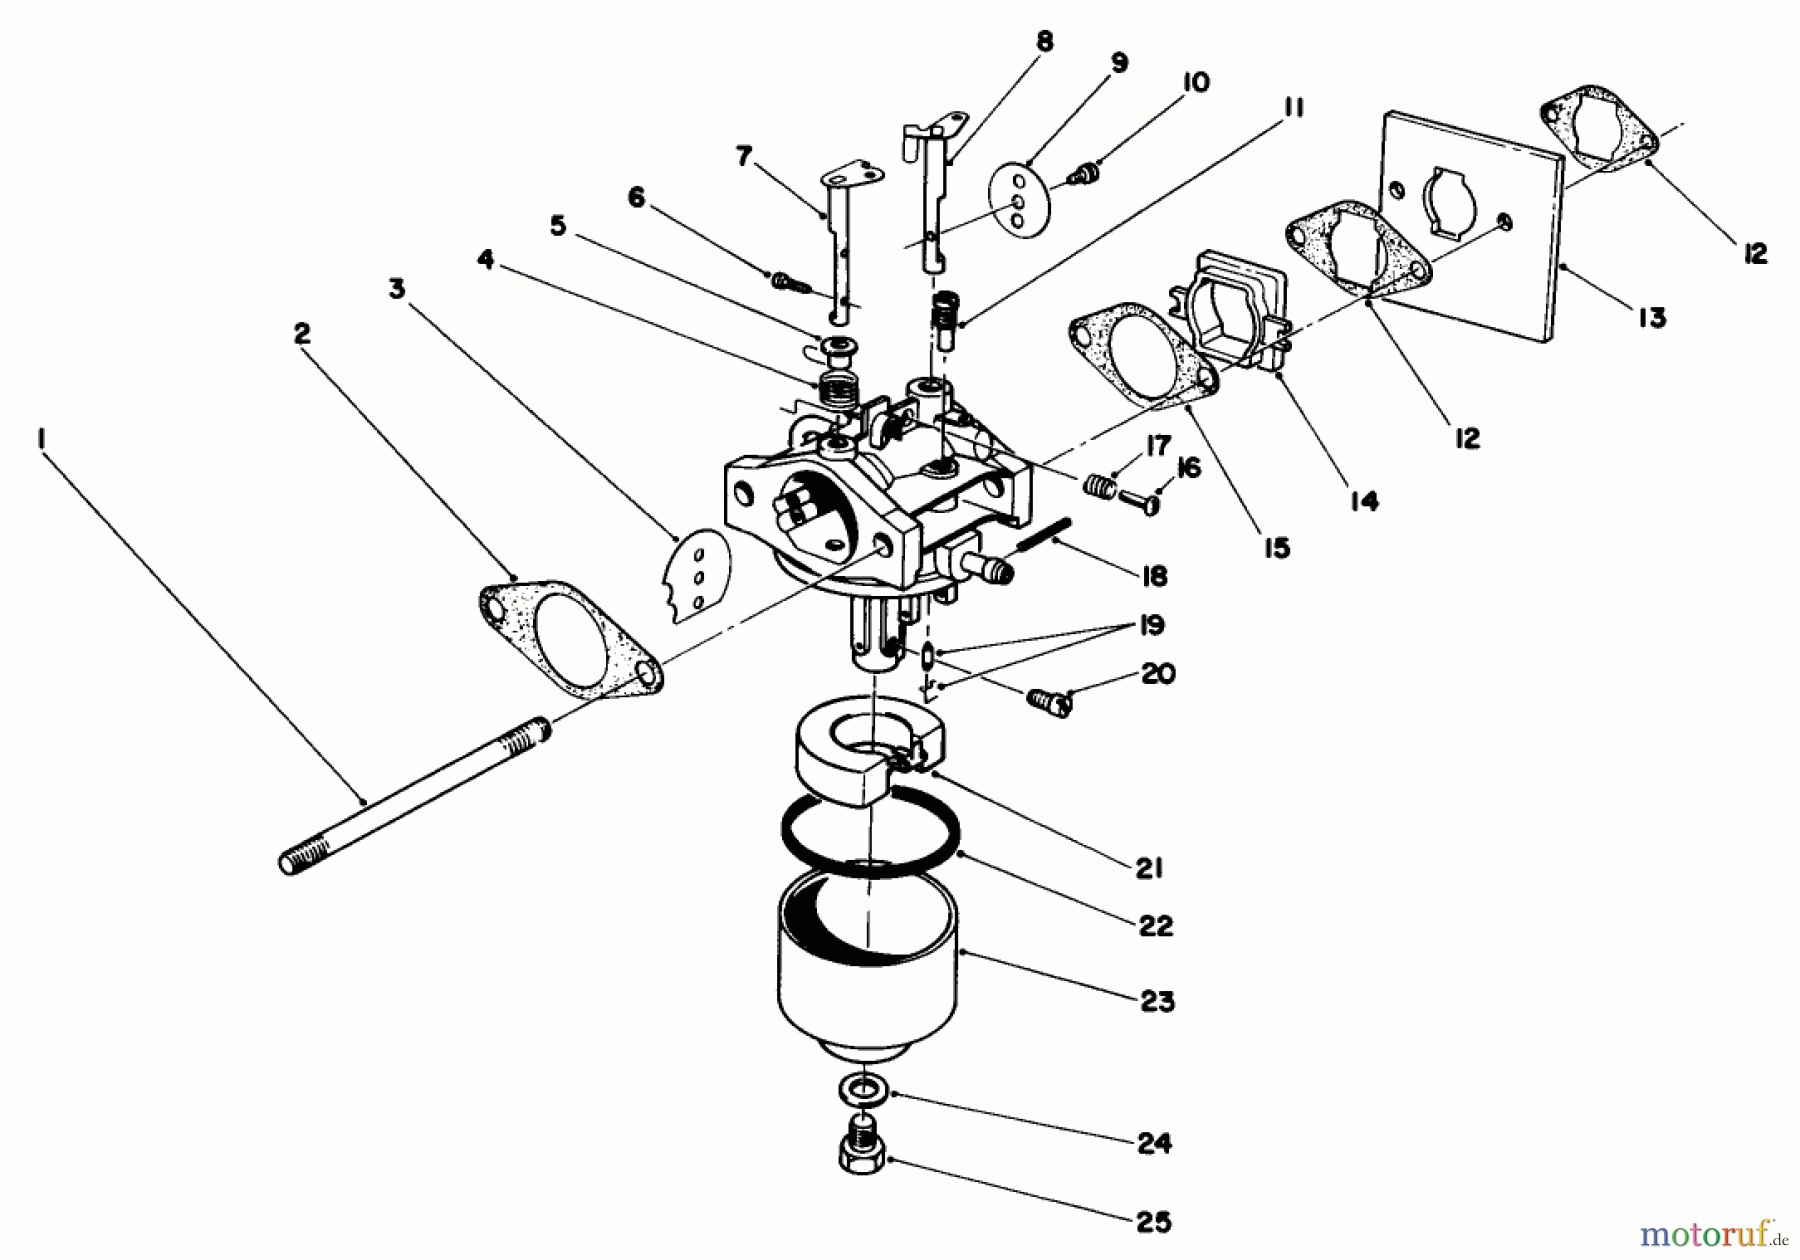  Toro Neu Mowers, Walk-Behind Seite 2 22025 - Toro Lawnmower, 1988 (8000001-8999999) ENGINE ASSEMBLY MODEL NO. 47PH7 #3